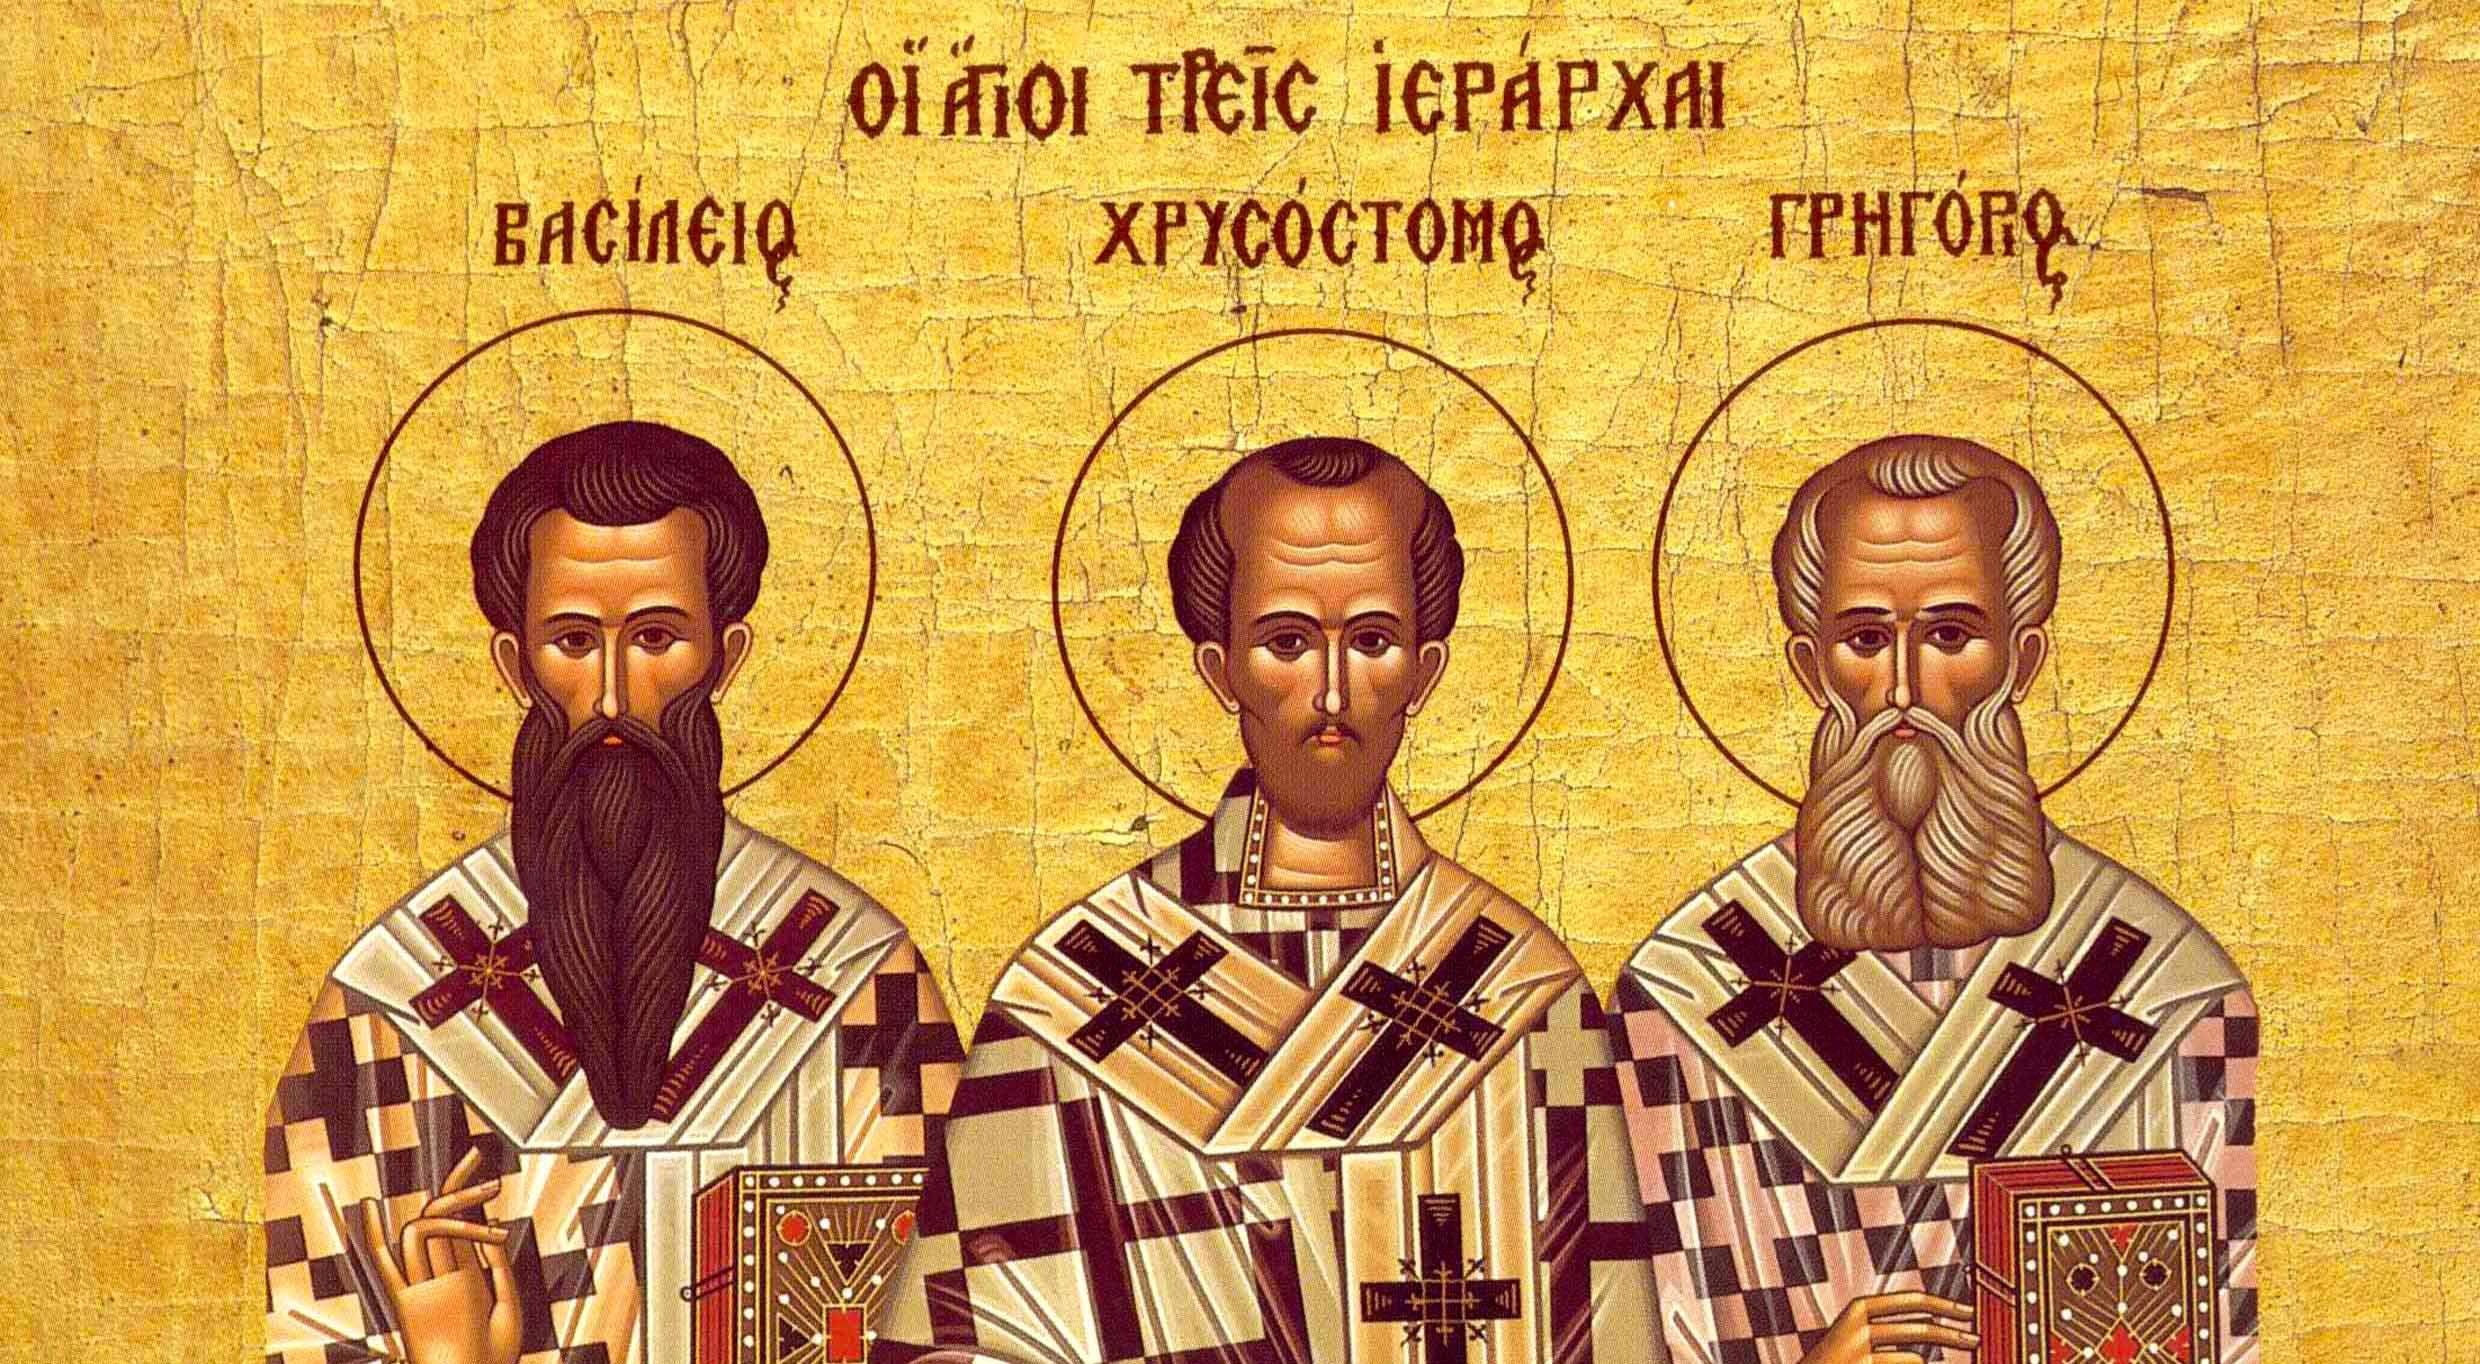  Ortodocşii îi sărbătoresc mâine pe Sfinţii Trei Ierarhi. Daţi de pomană o candelă!